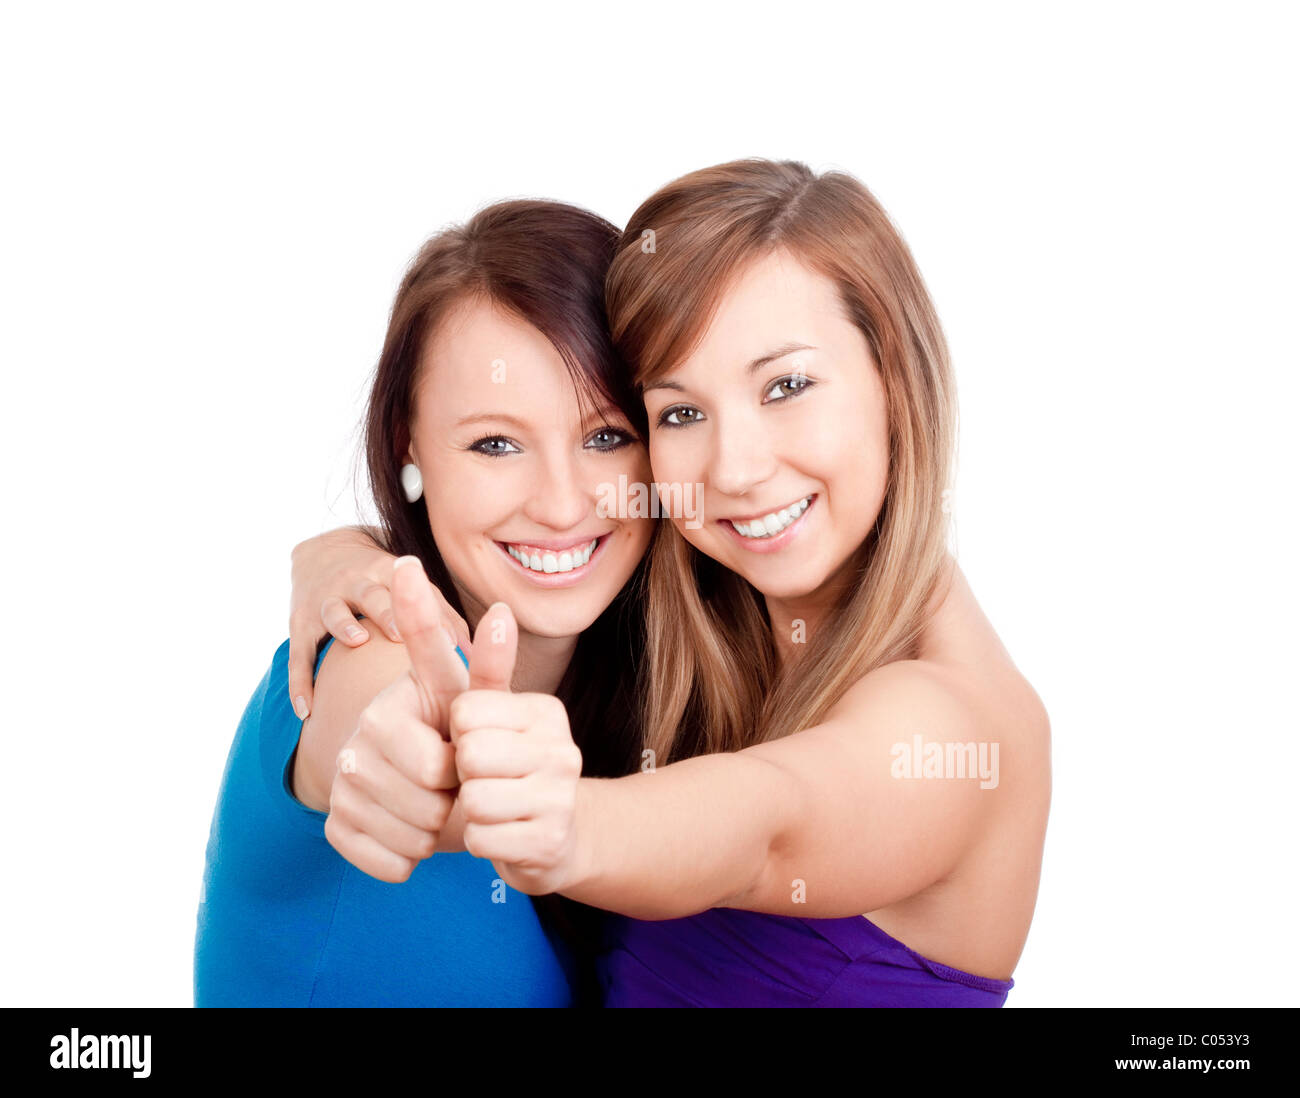 zwei junge Frauen auftauchend Daumen, lächelnd - isoliert auf weiß Stockfoto